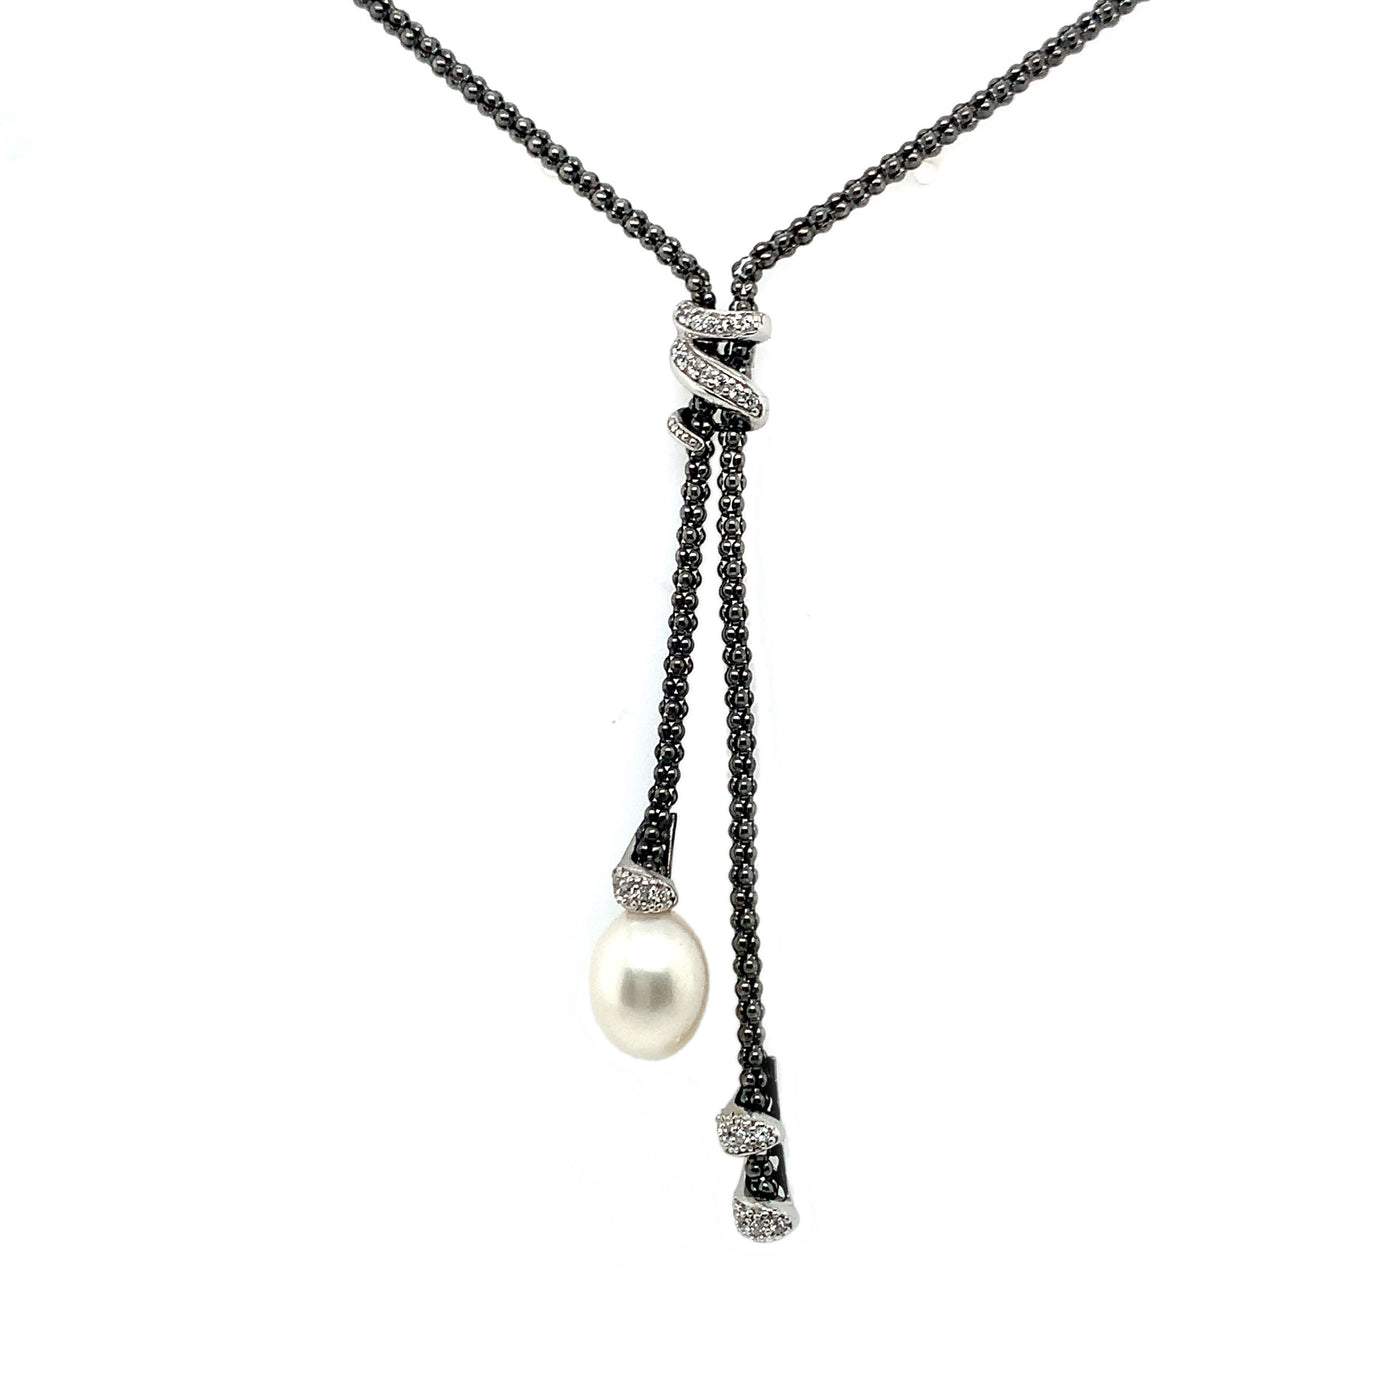 IL Diletto - 925 Italian Silver Necklace, Popcorn chain, Pearl & CZ, 40+5cm, Ruthenium Plated